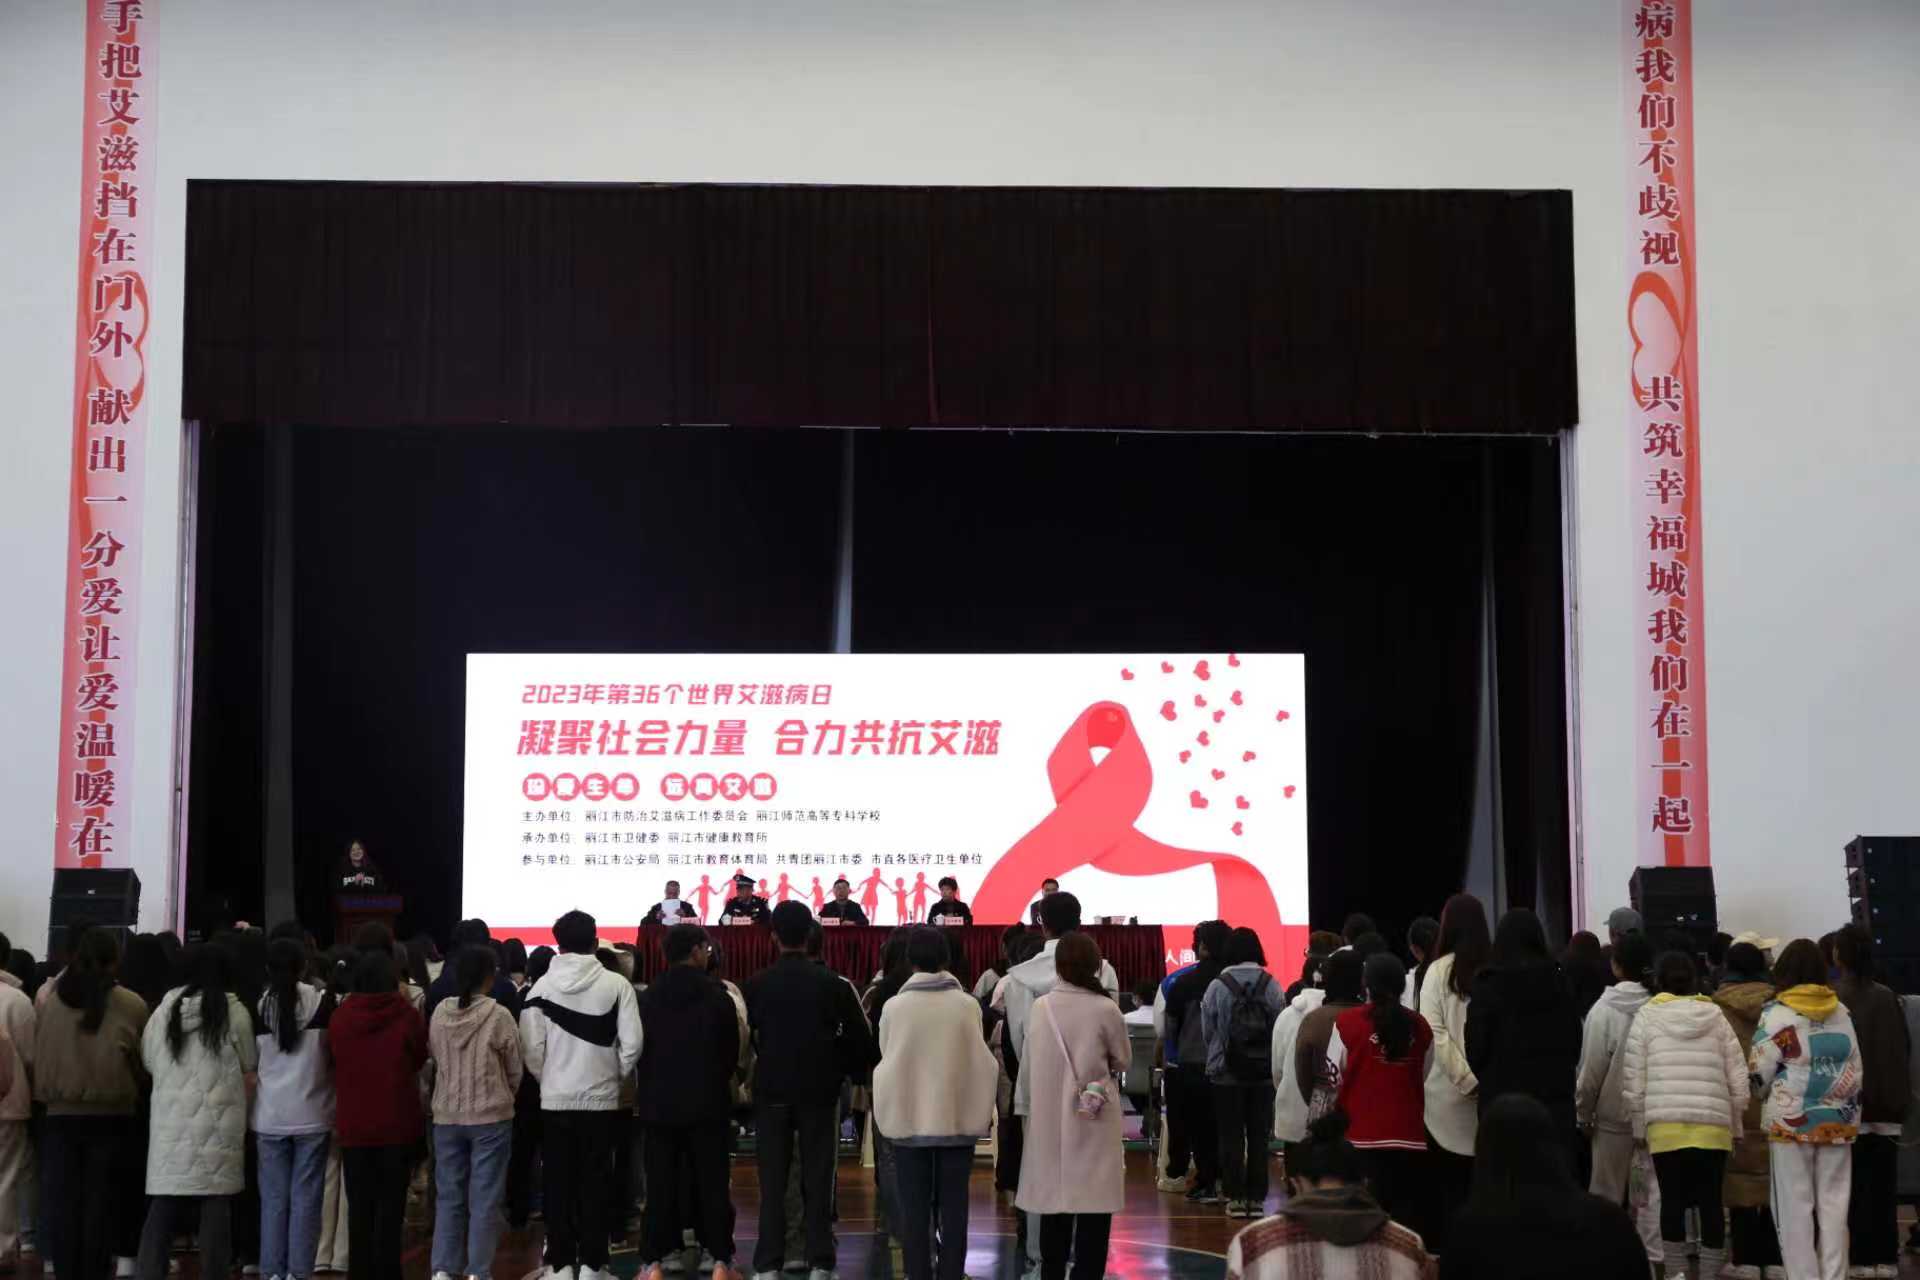 丽江市举办第36个“世界艾滋病日”宣传活动，呼吁凝聚社会力量共抗艾滋病 (8).jpg